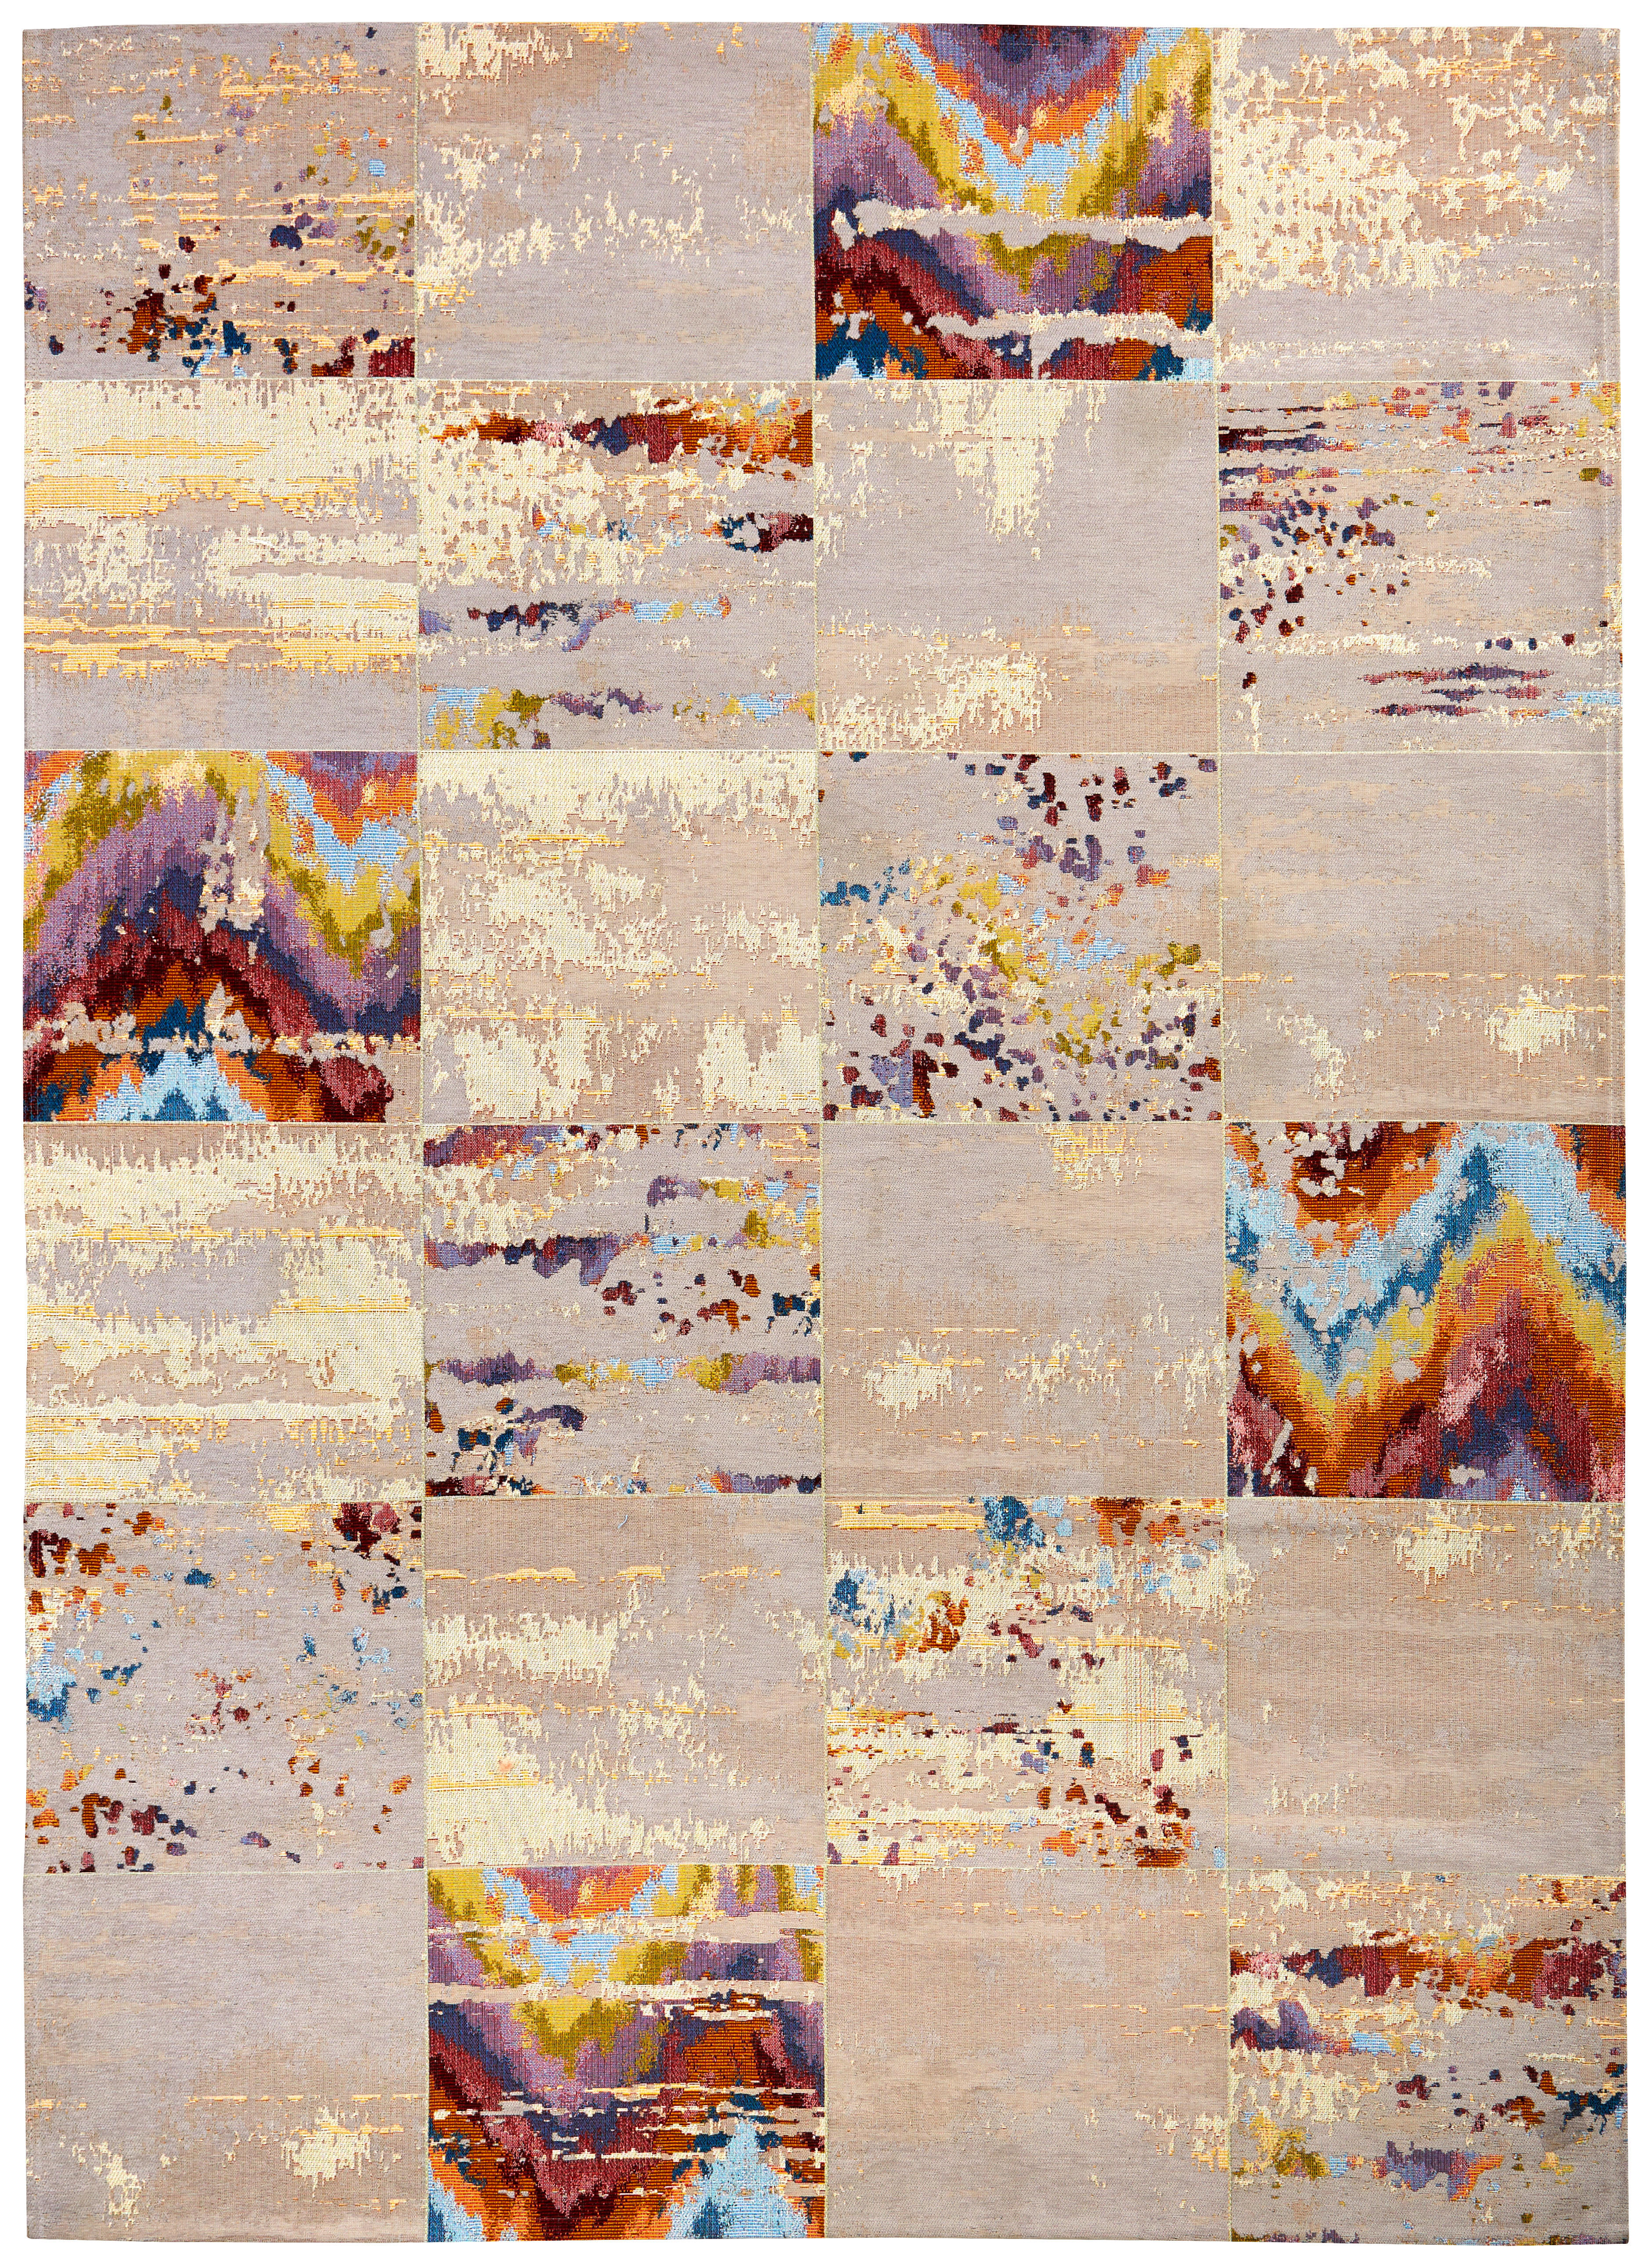 VINTAGE-TEPPICH  120/180 cm  Grau, Multicolor   - Multicolor/Grau, LIFESTYLE, Textil (120/180cm) - Novel